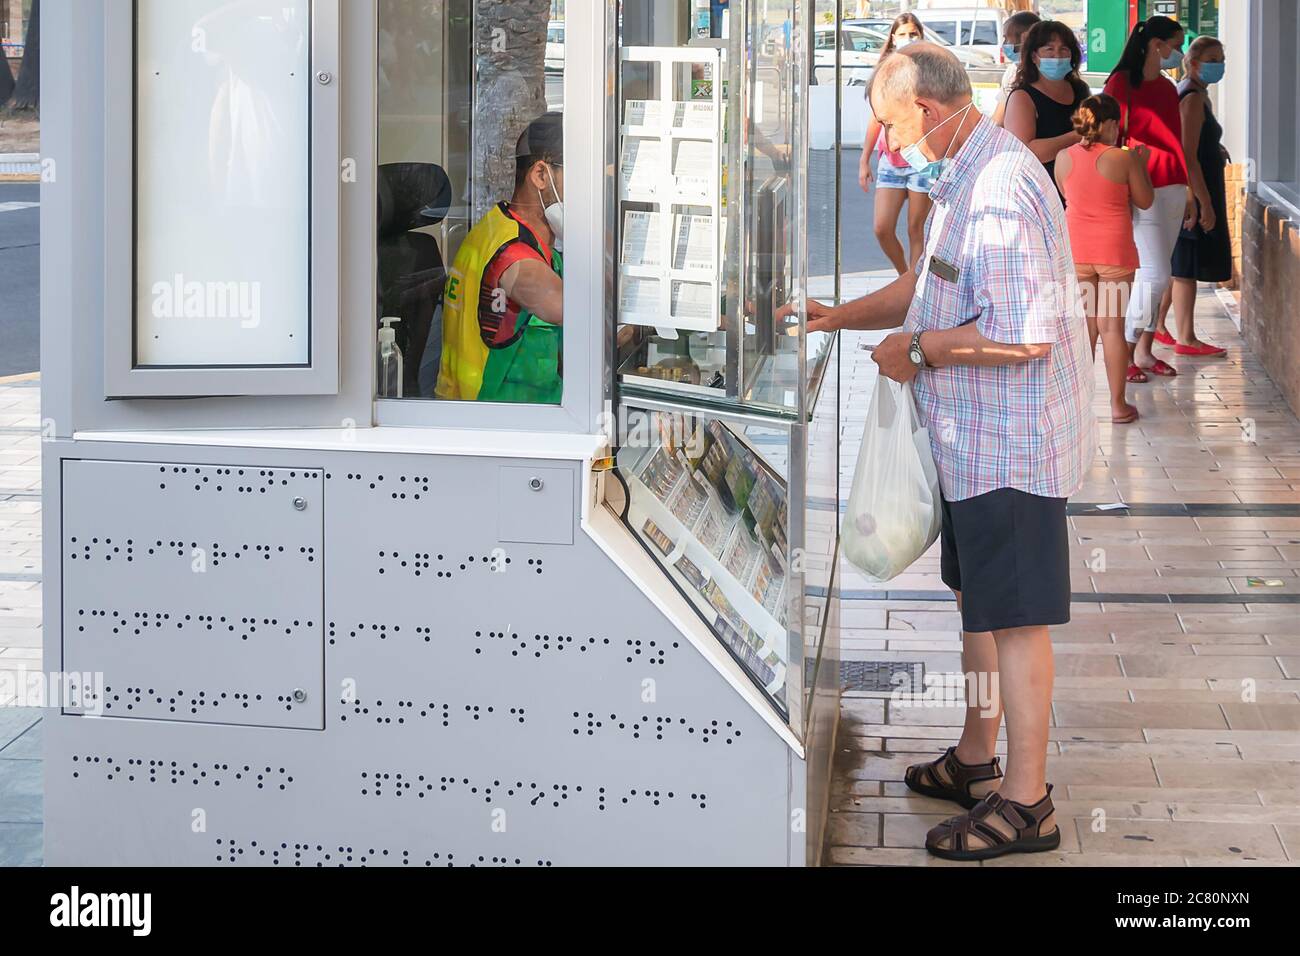 Punta Umbria, Huelva, Espagne - 11 juillet 2020: L'homme dans le masque protecteur achète des billets de loterie à une SEULE BORNE à Punta Umbria, Andalousie, Espagne Banque D'Images